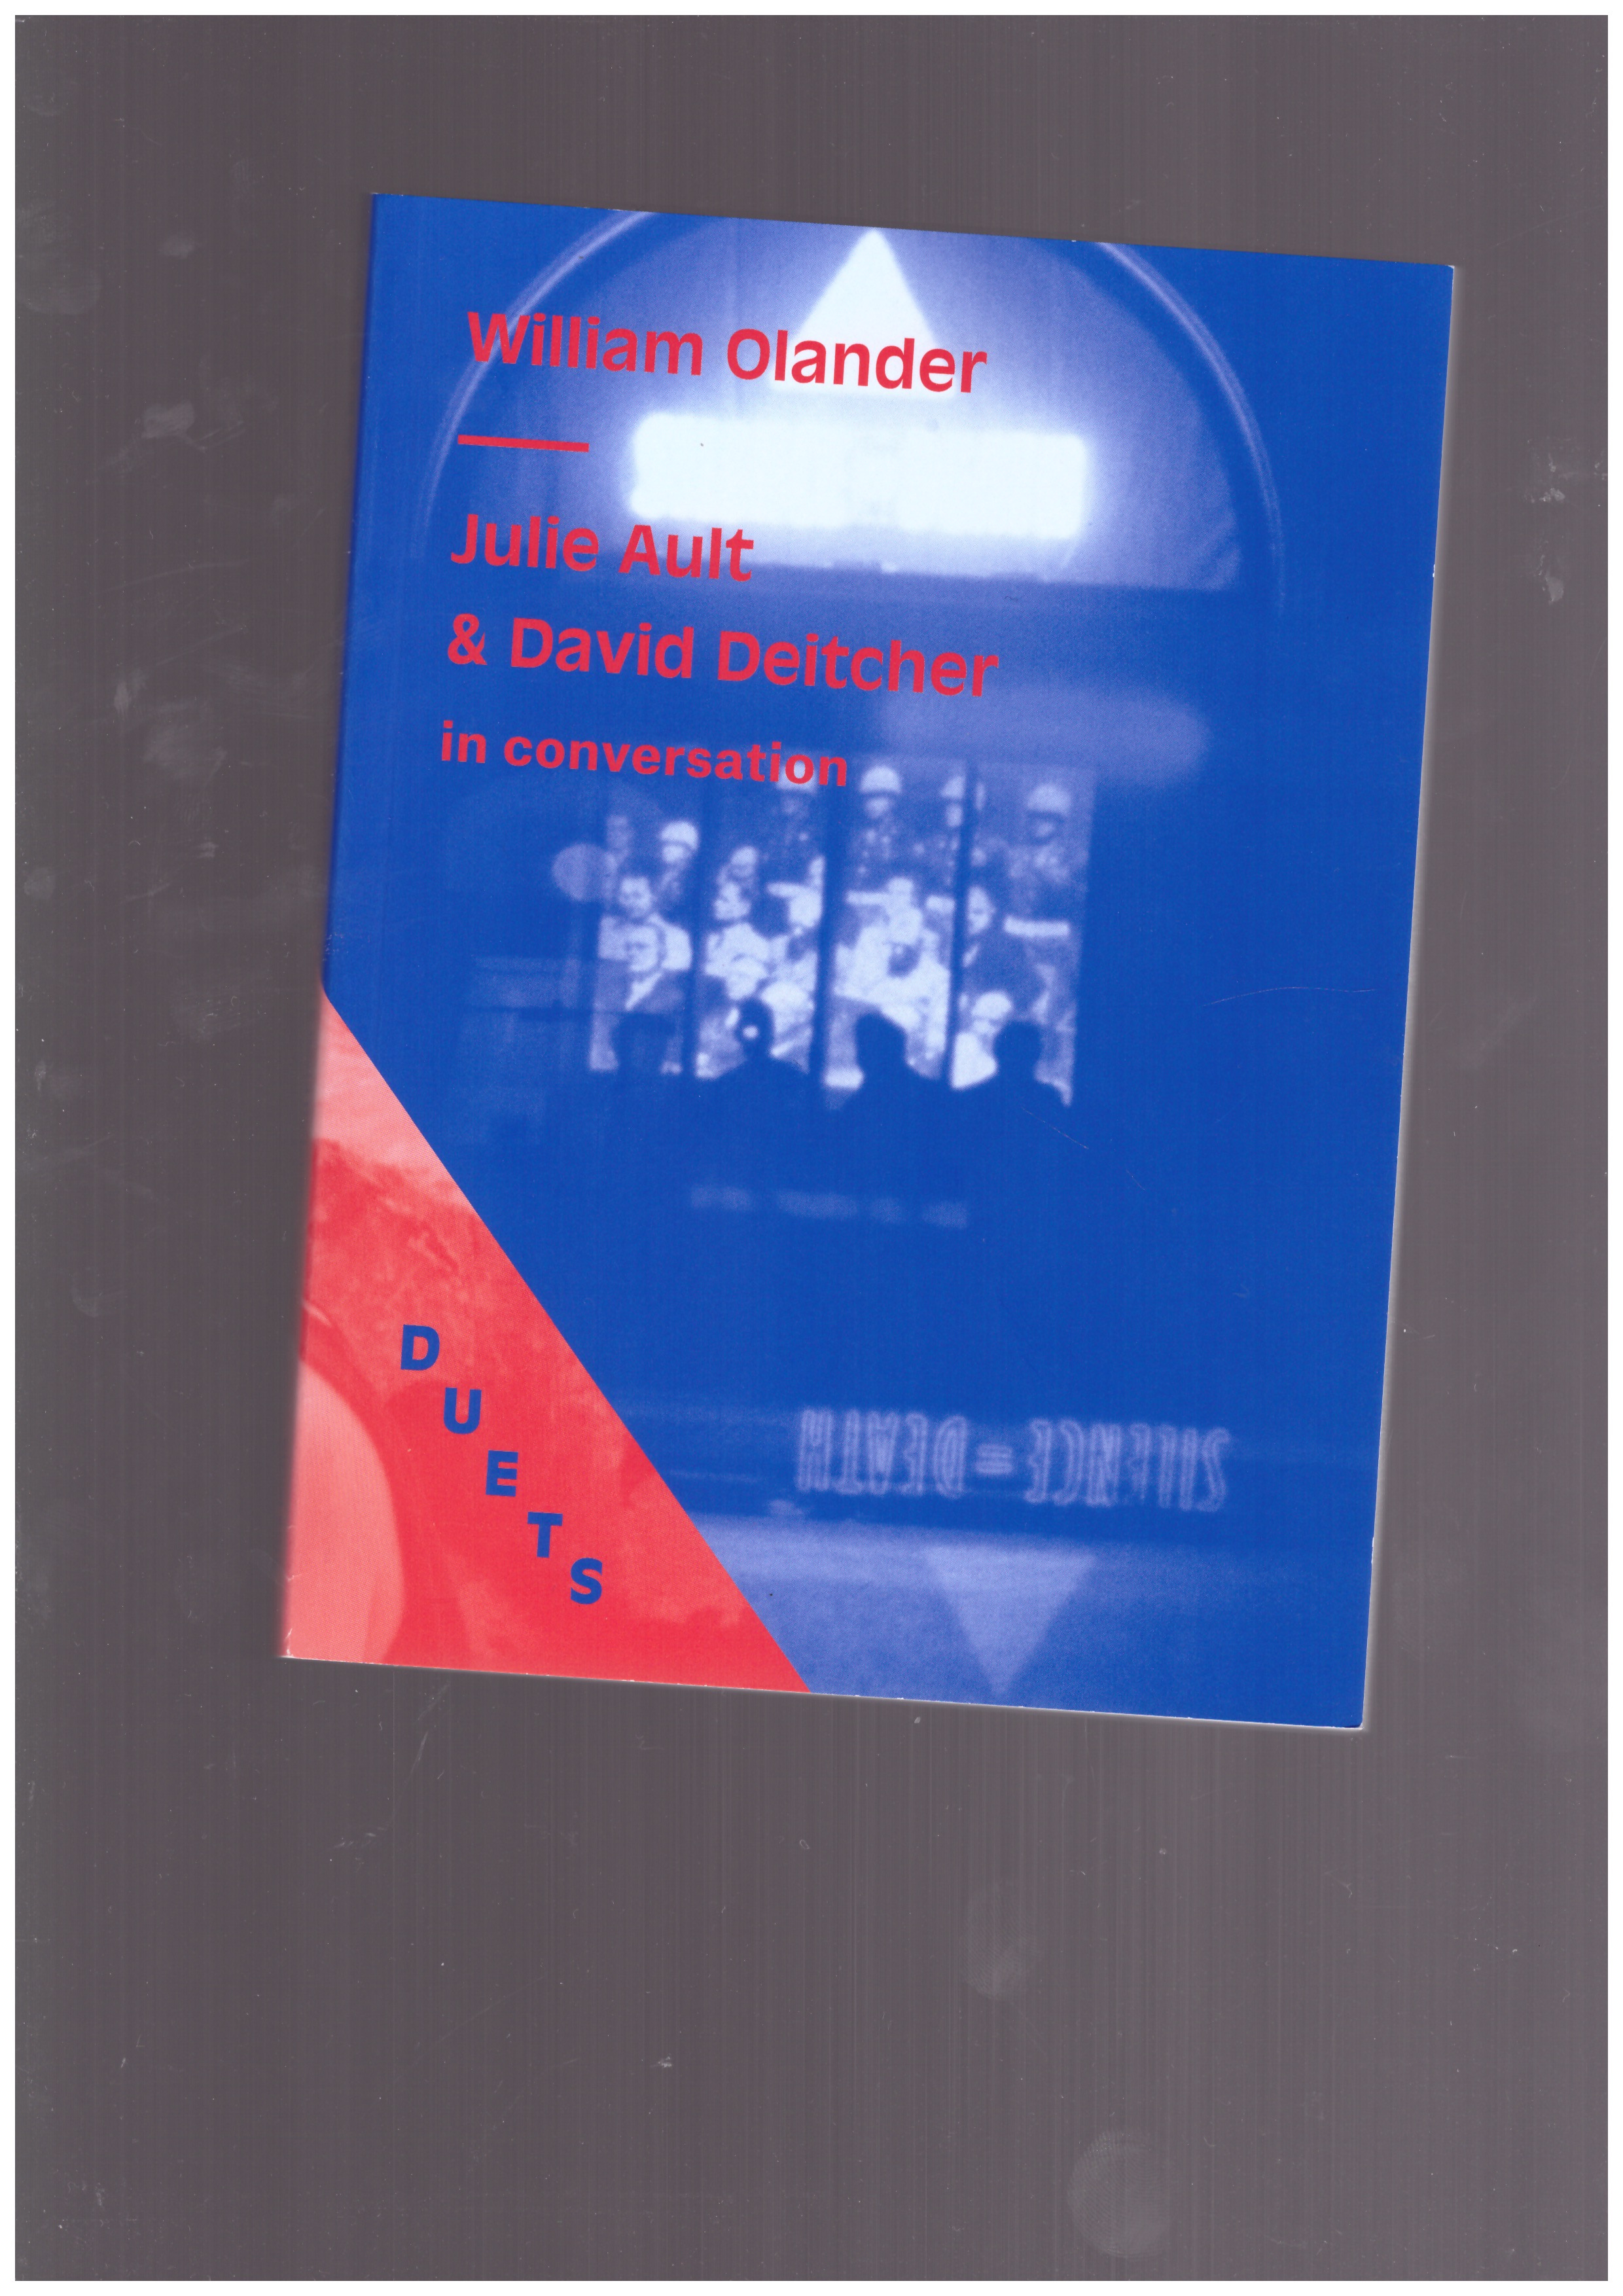 AULT, Julie; DEITCHER, David; OLANDER, William - Duets: William Olander / Julie Ault & David Deitcher in conversation